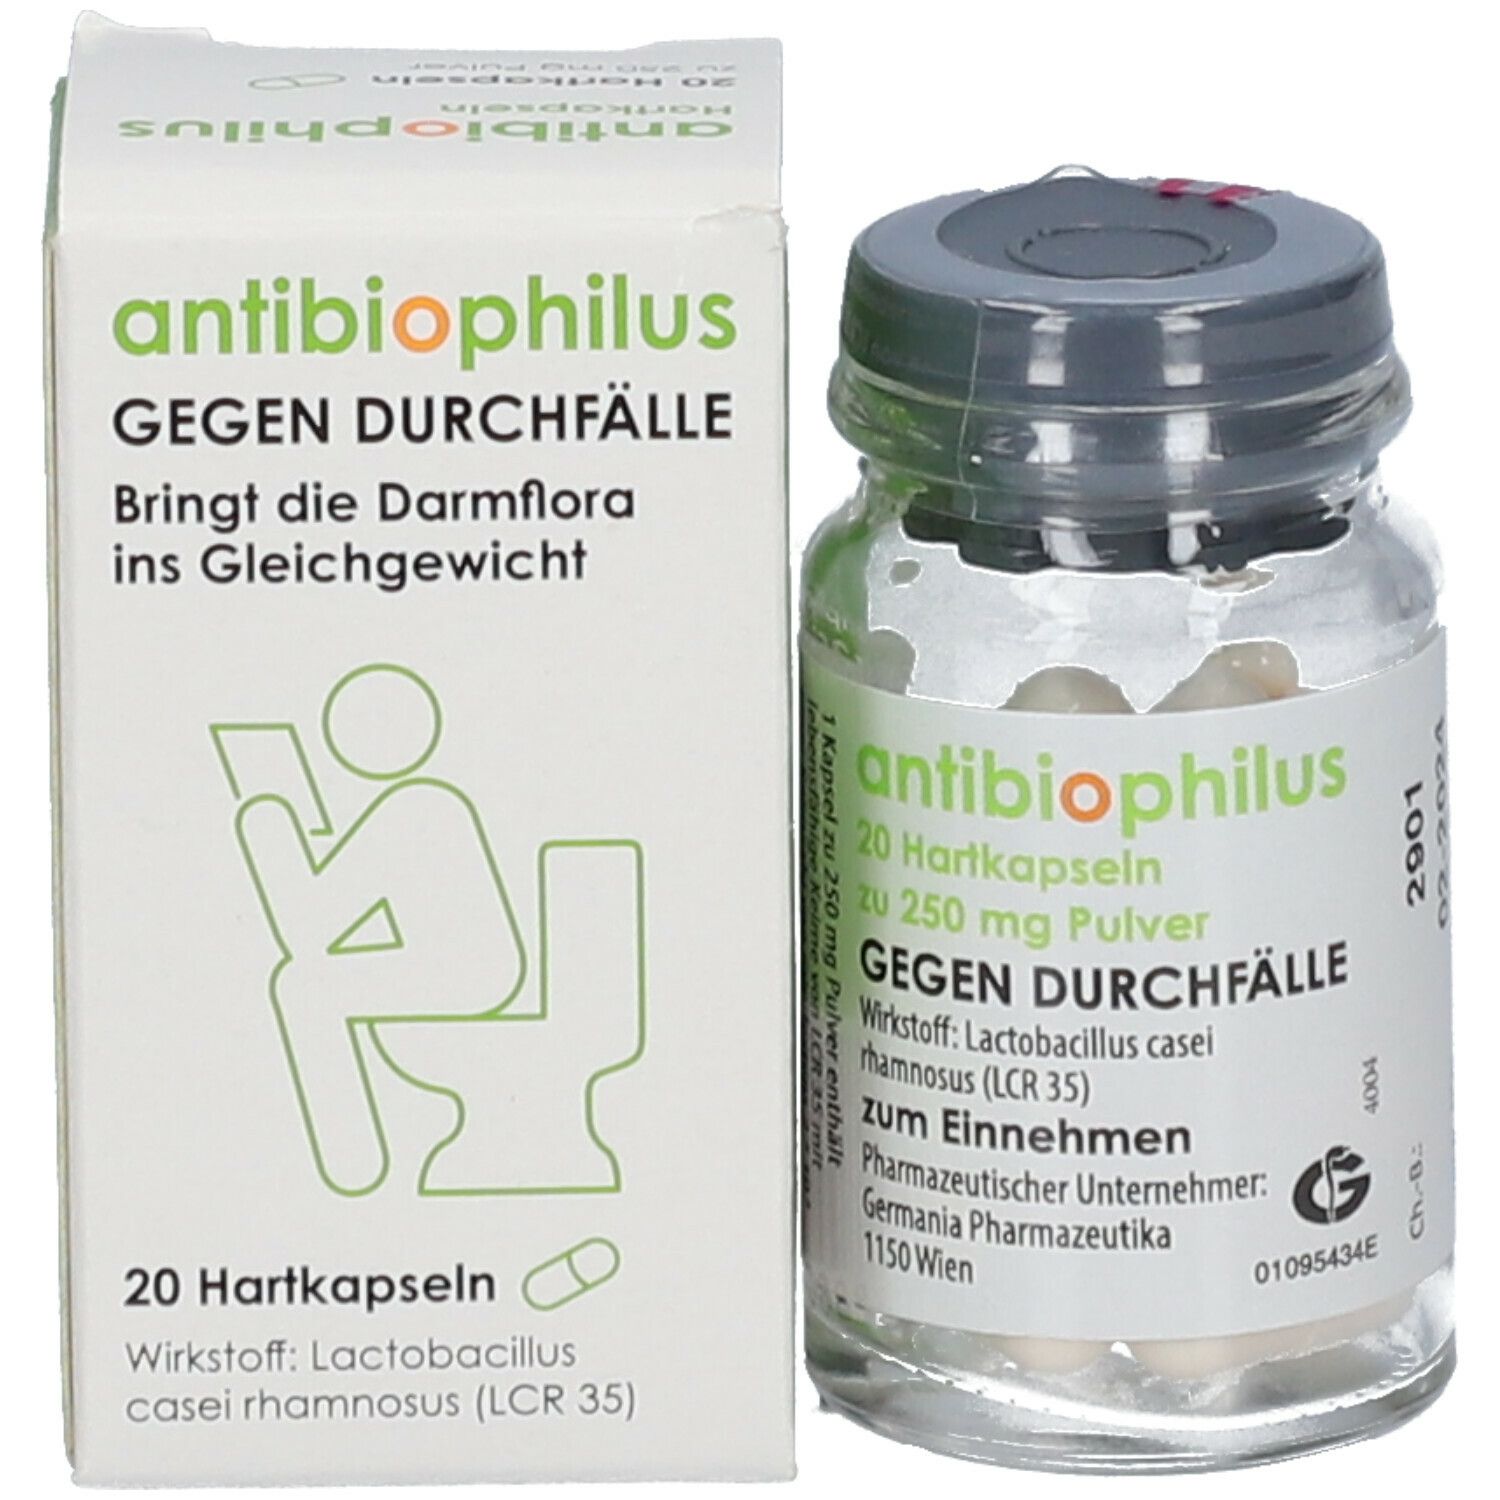 antibiophilus